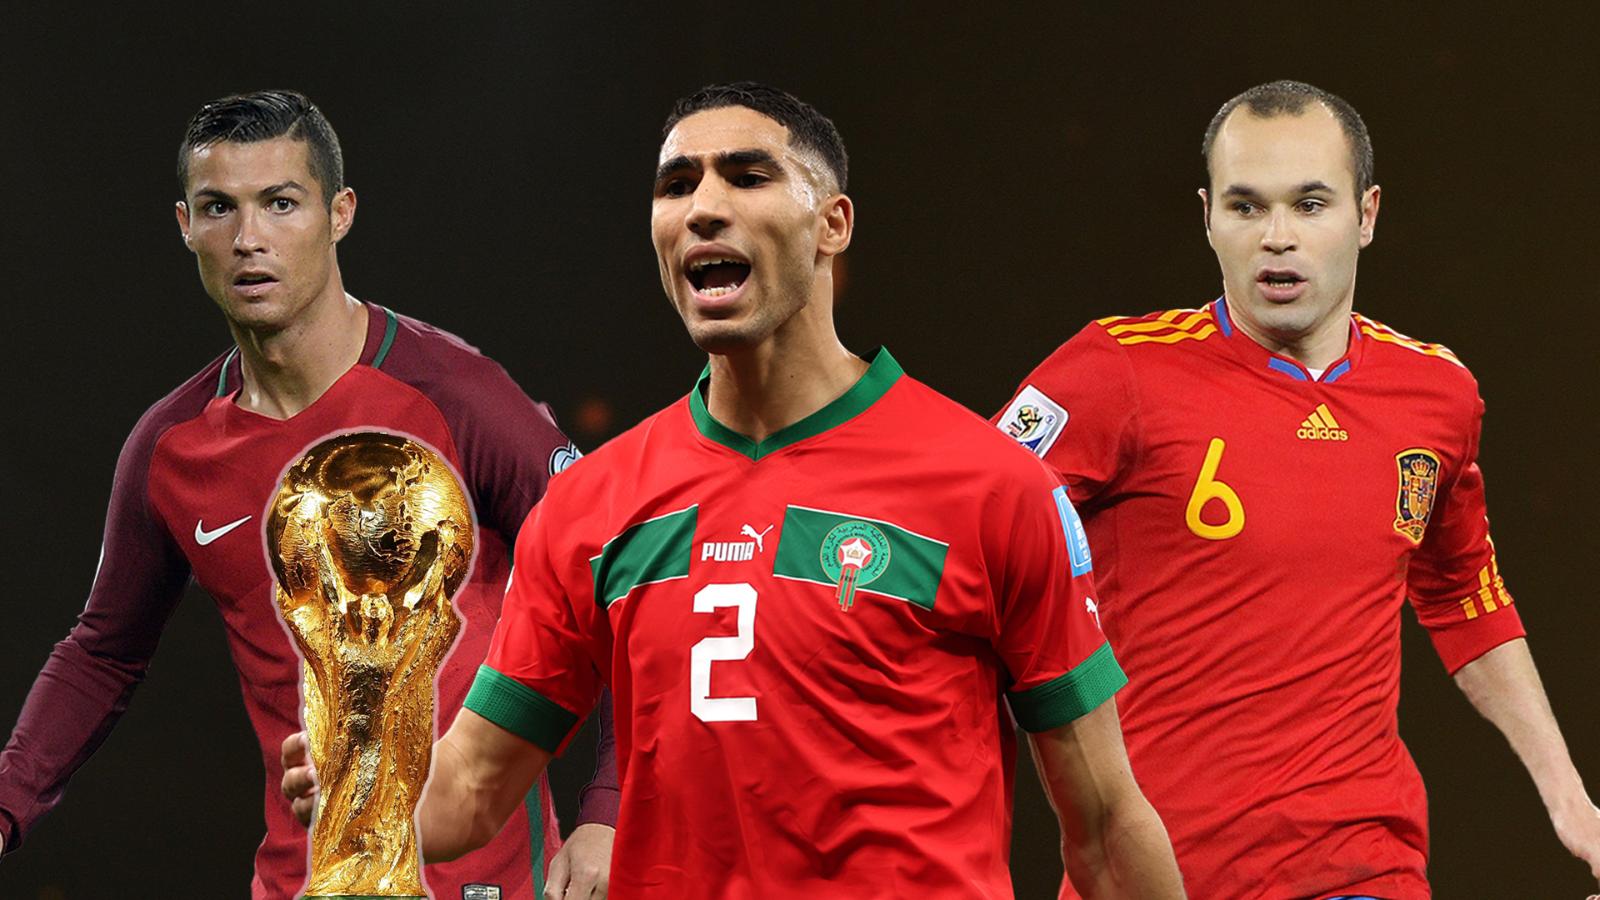 España, Portugal y Marruecos presentan el logo oficial del Mundial de
fútbol de 2030